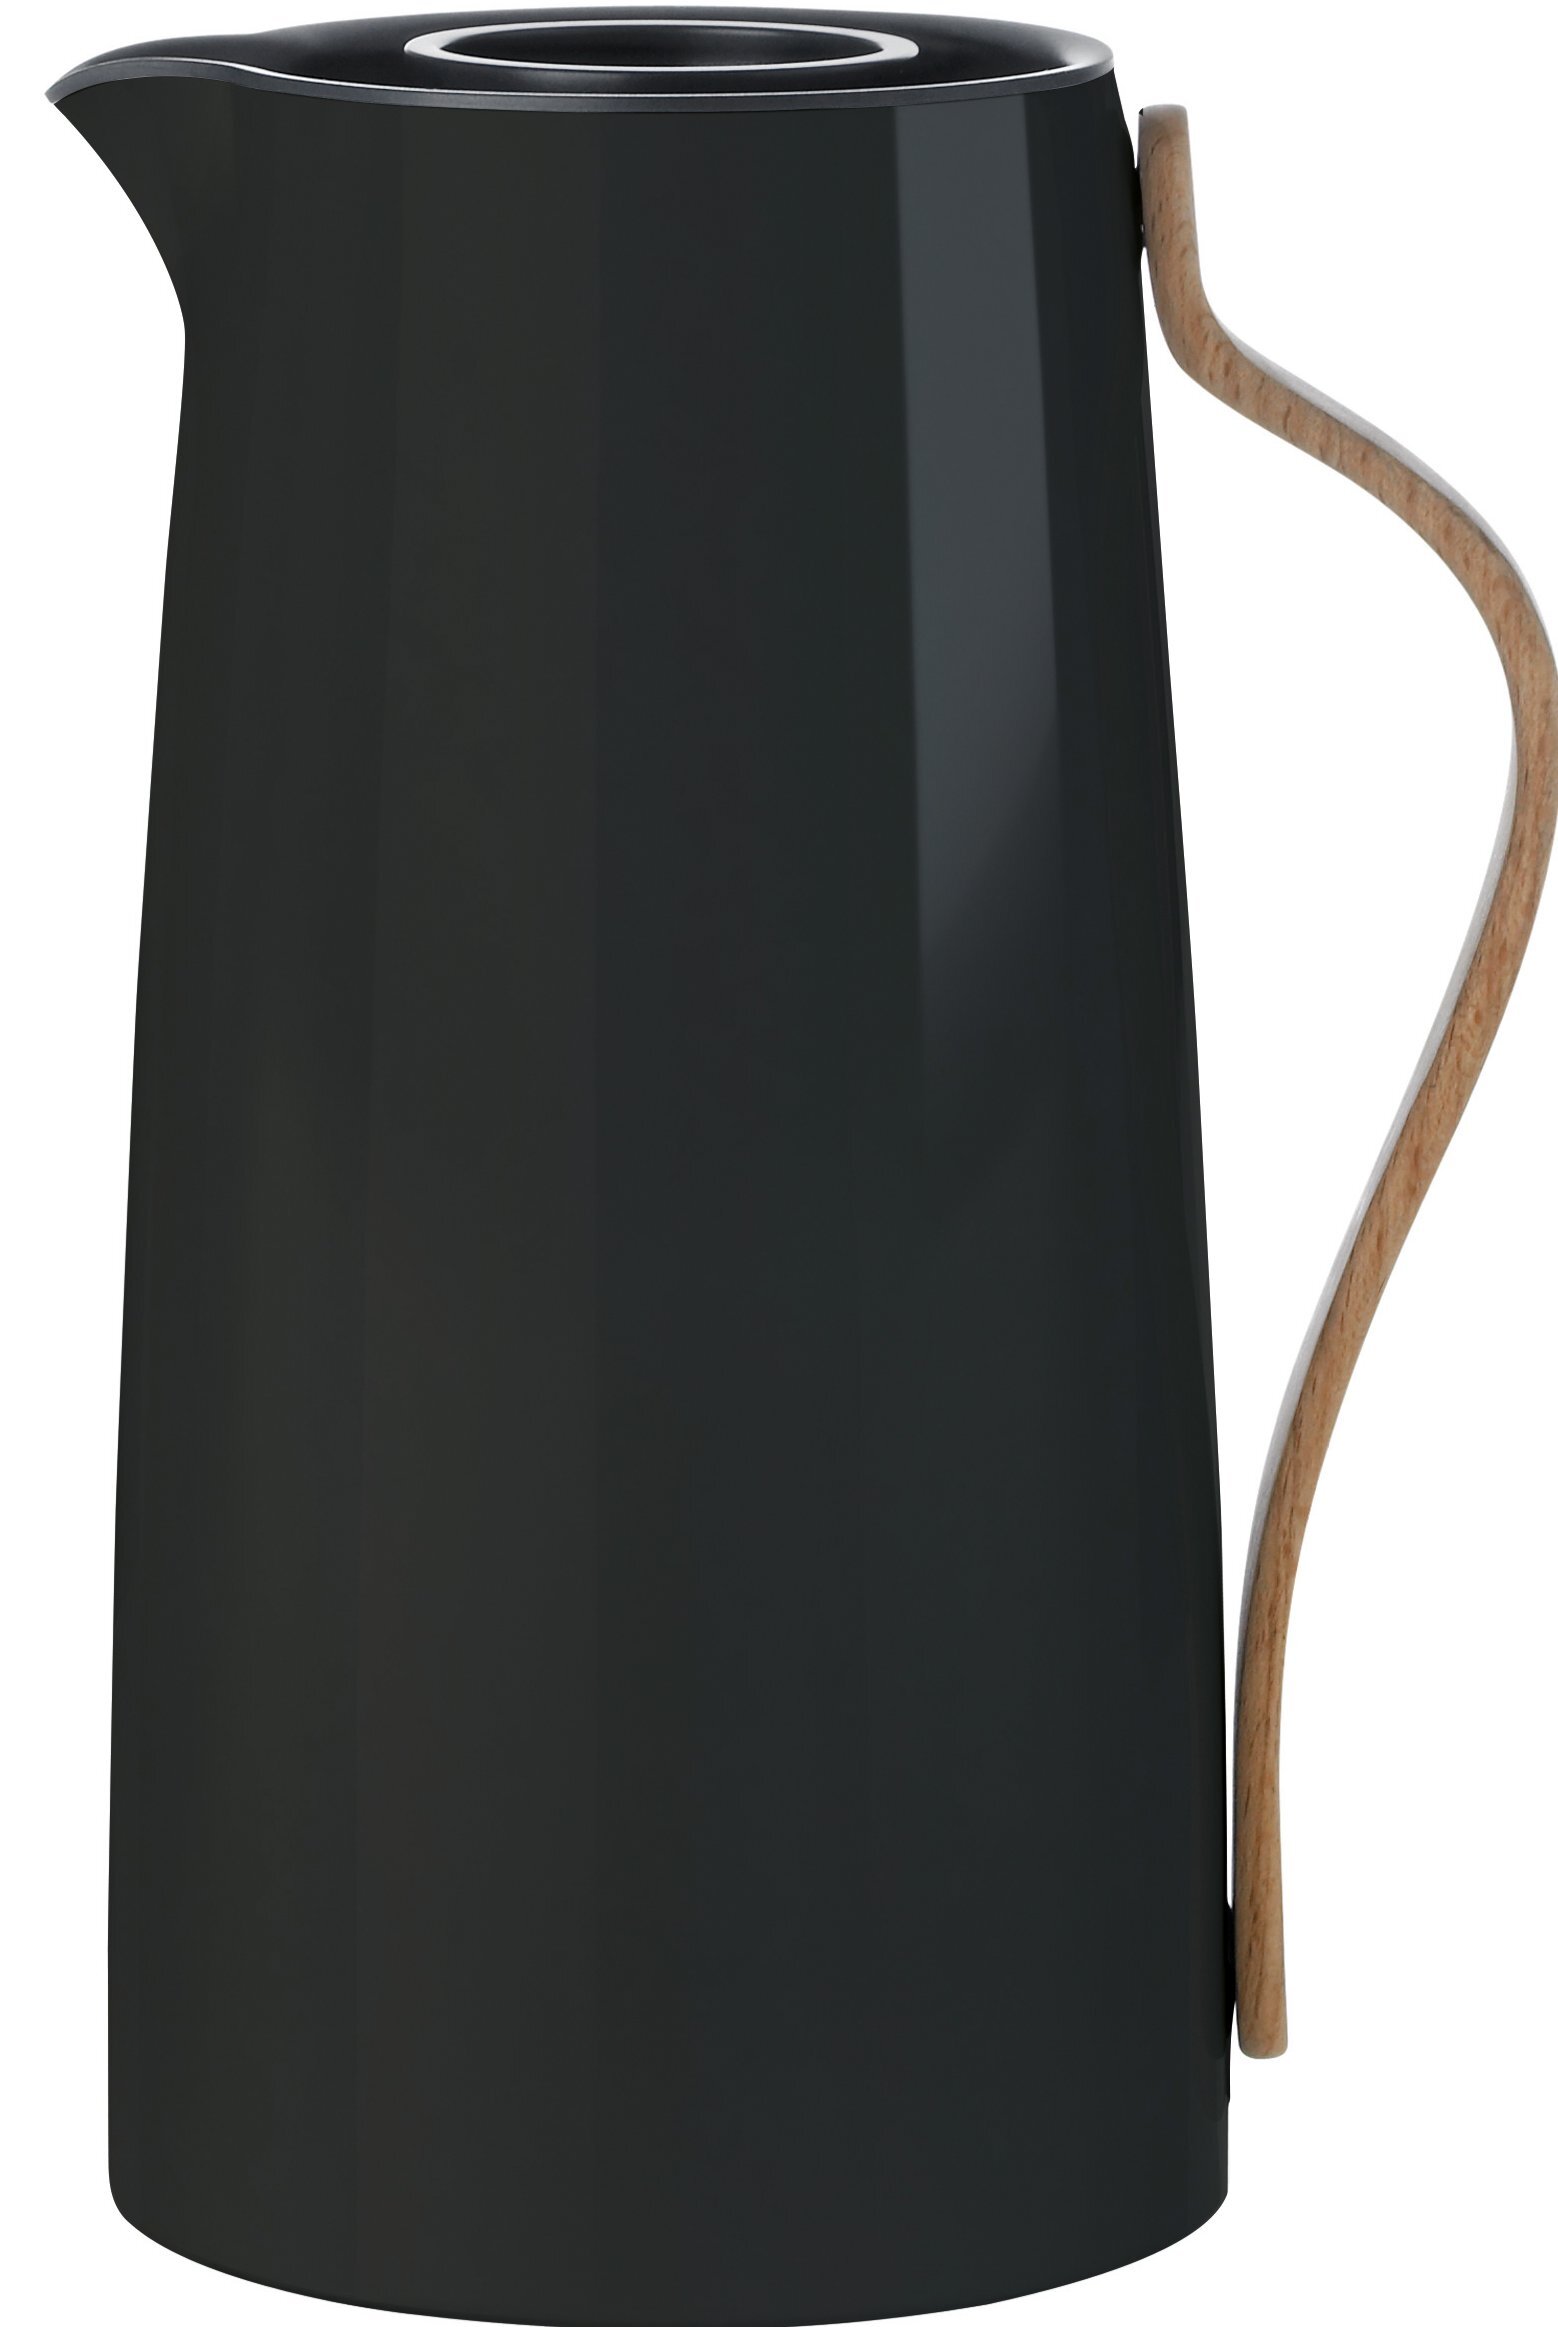 Stelton Emma thermosfles - 1.2 liter - zwart